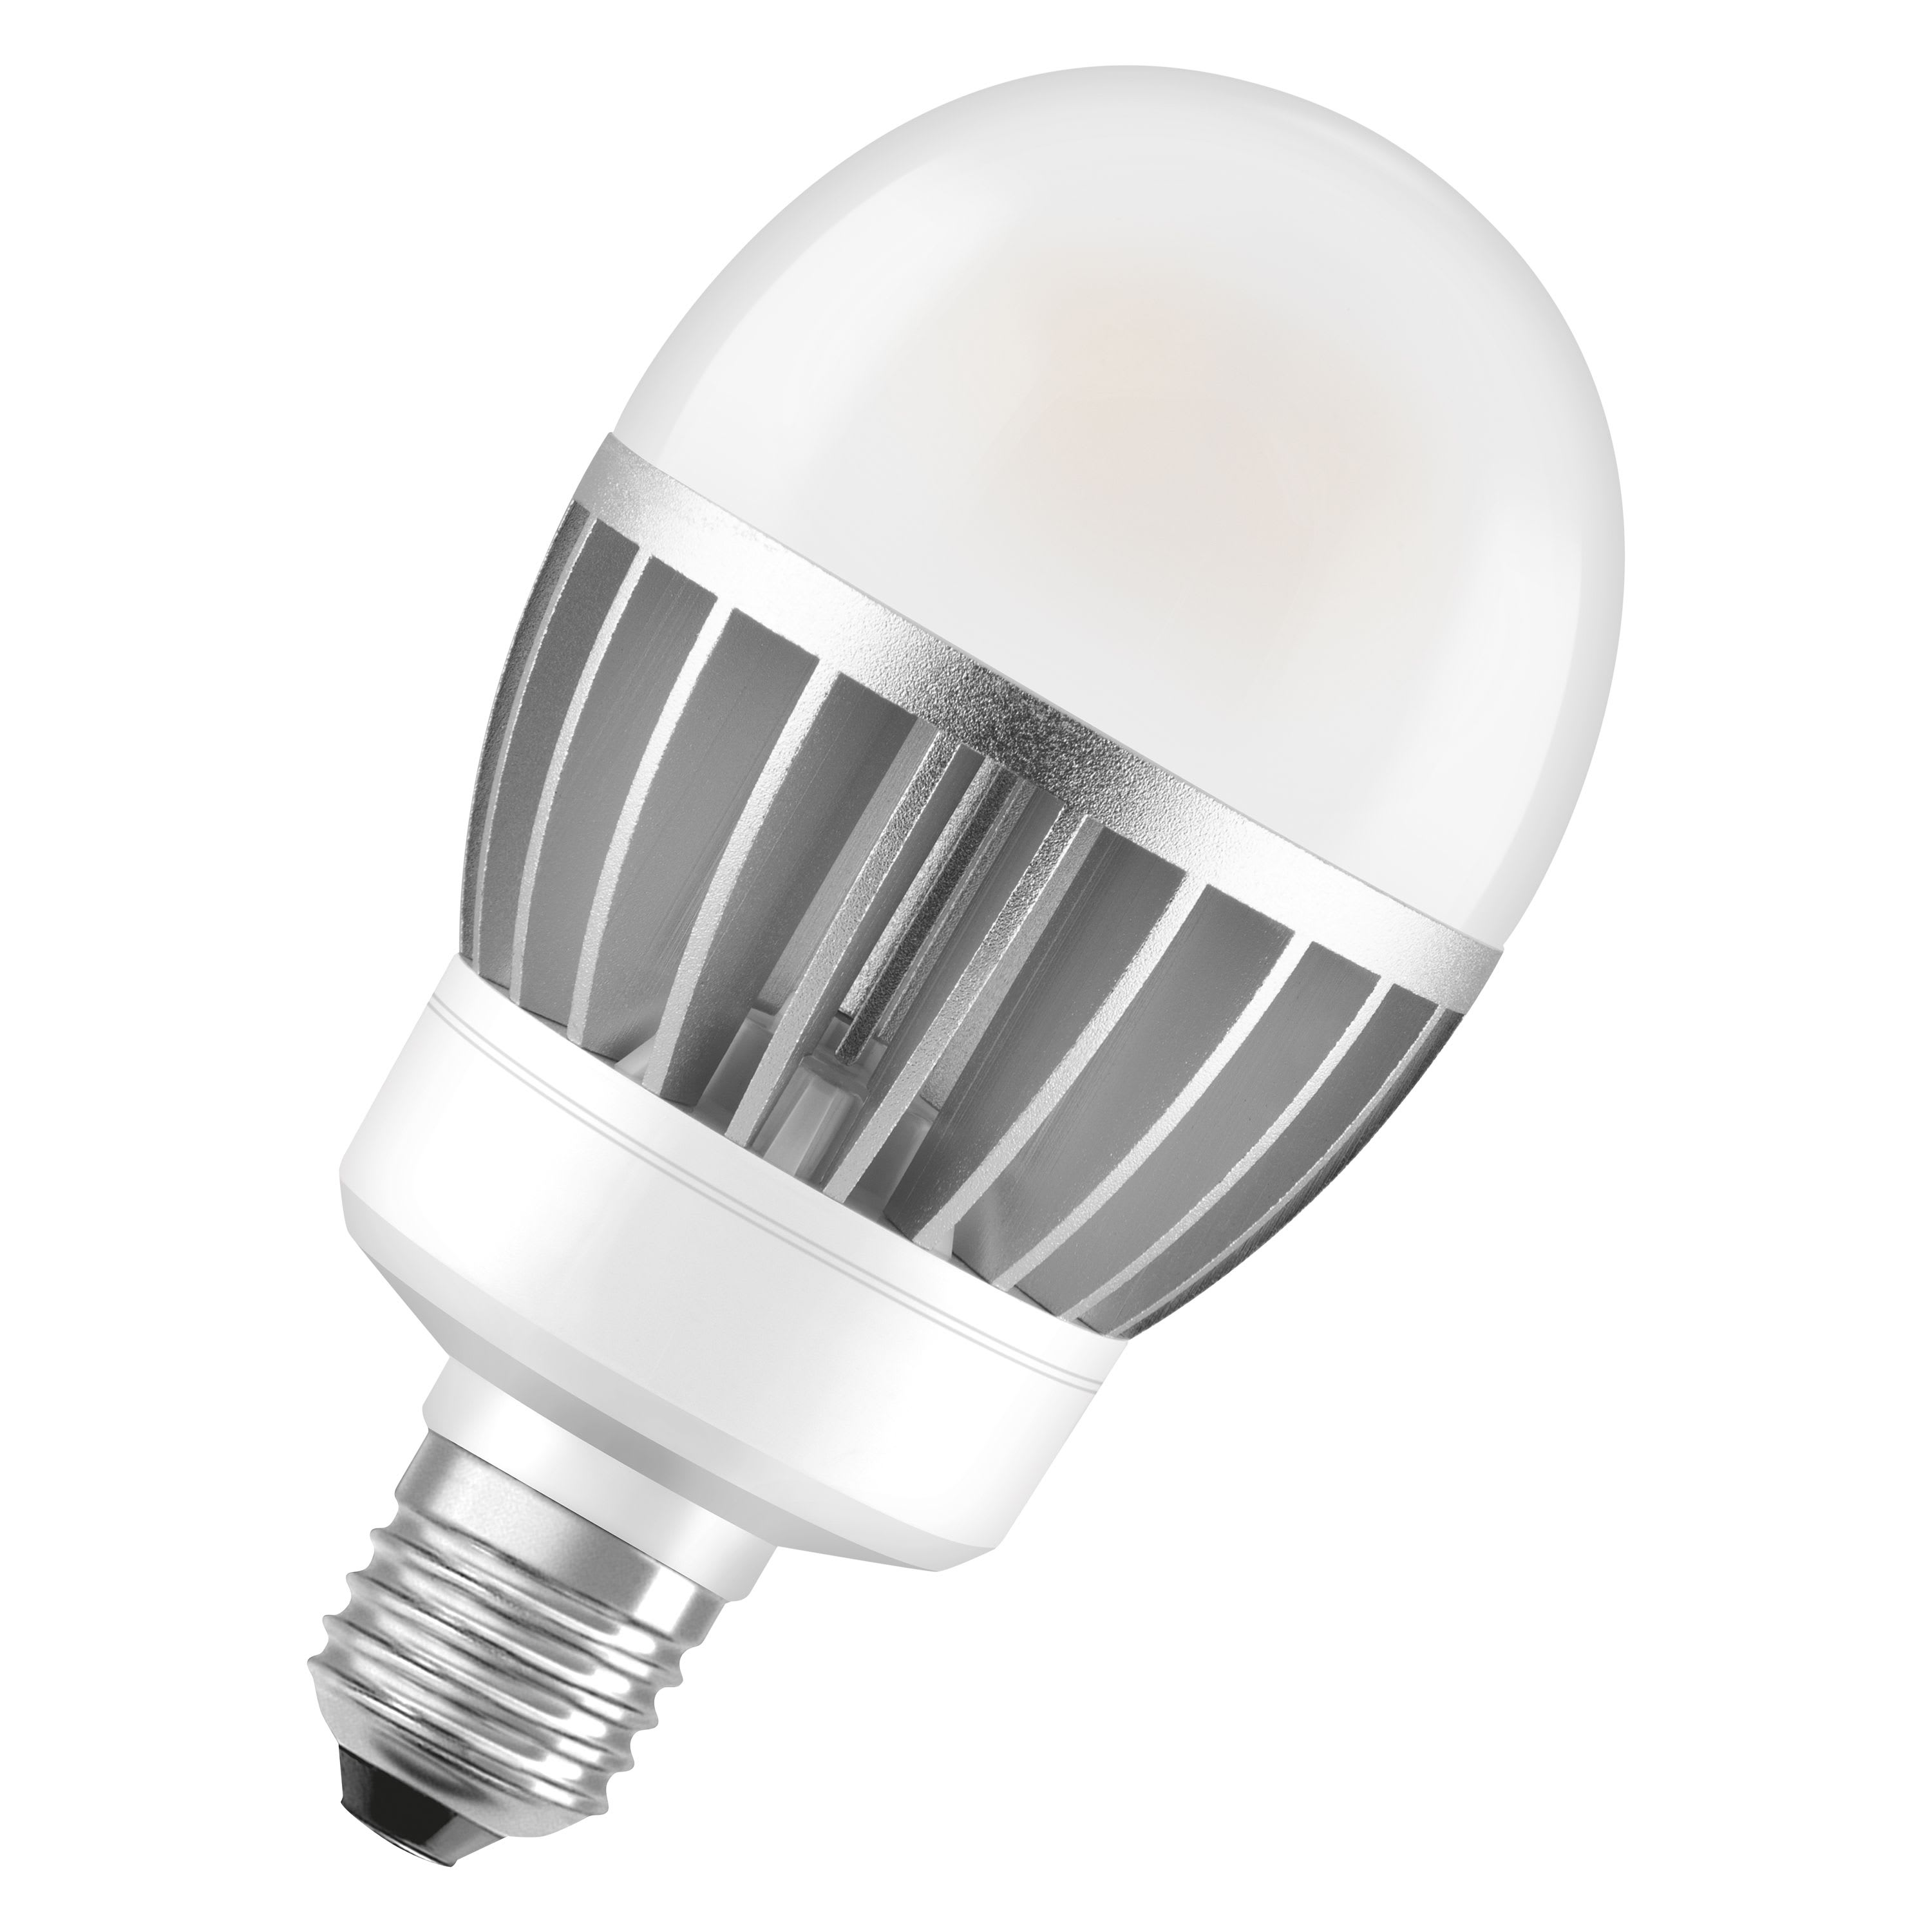 Lampe G9 230V LED 3,3W 3000K 350lm, Cl.energ.F, 25000H Aric